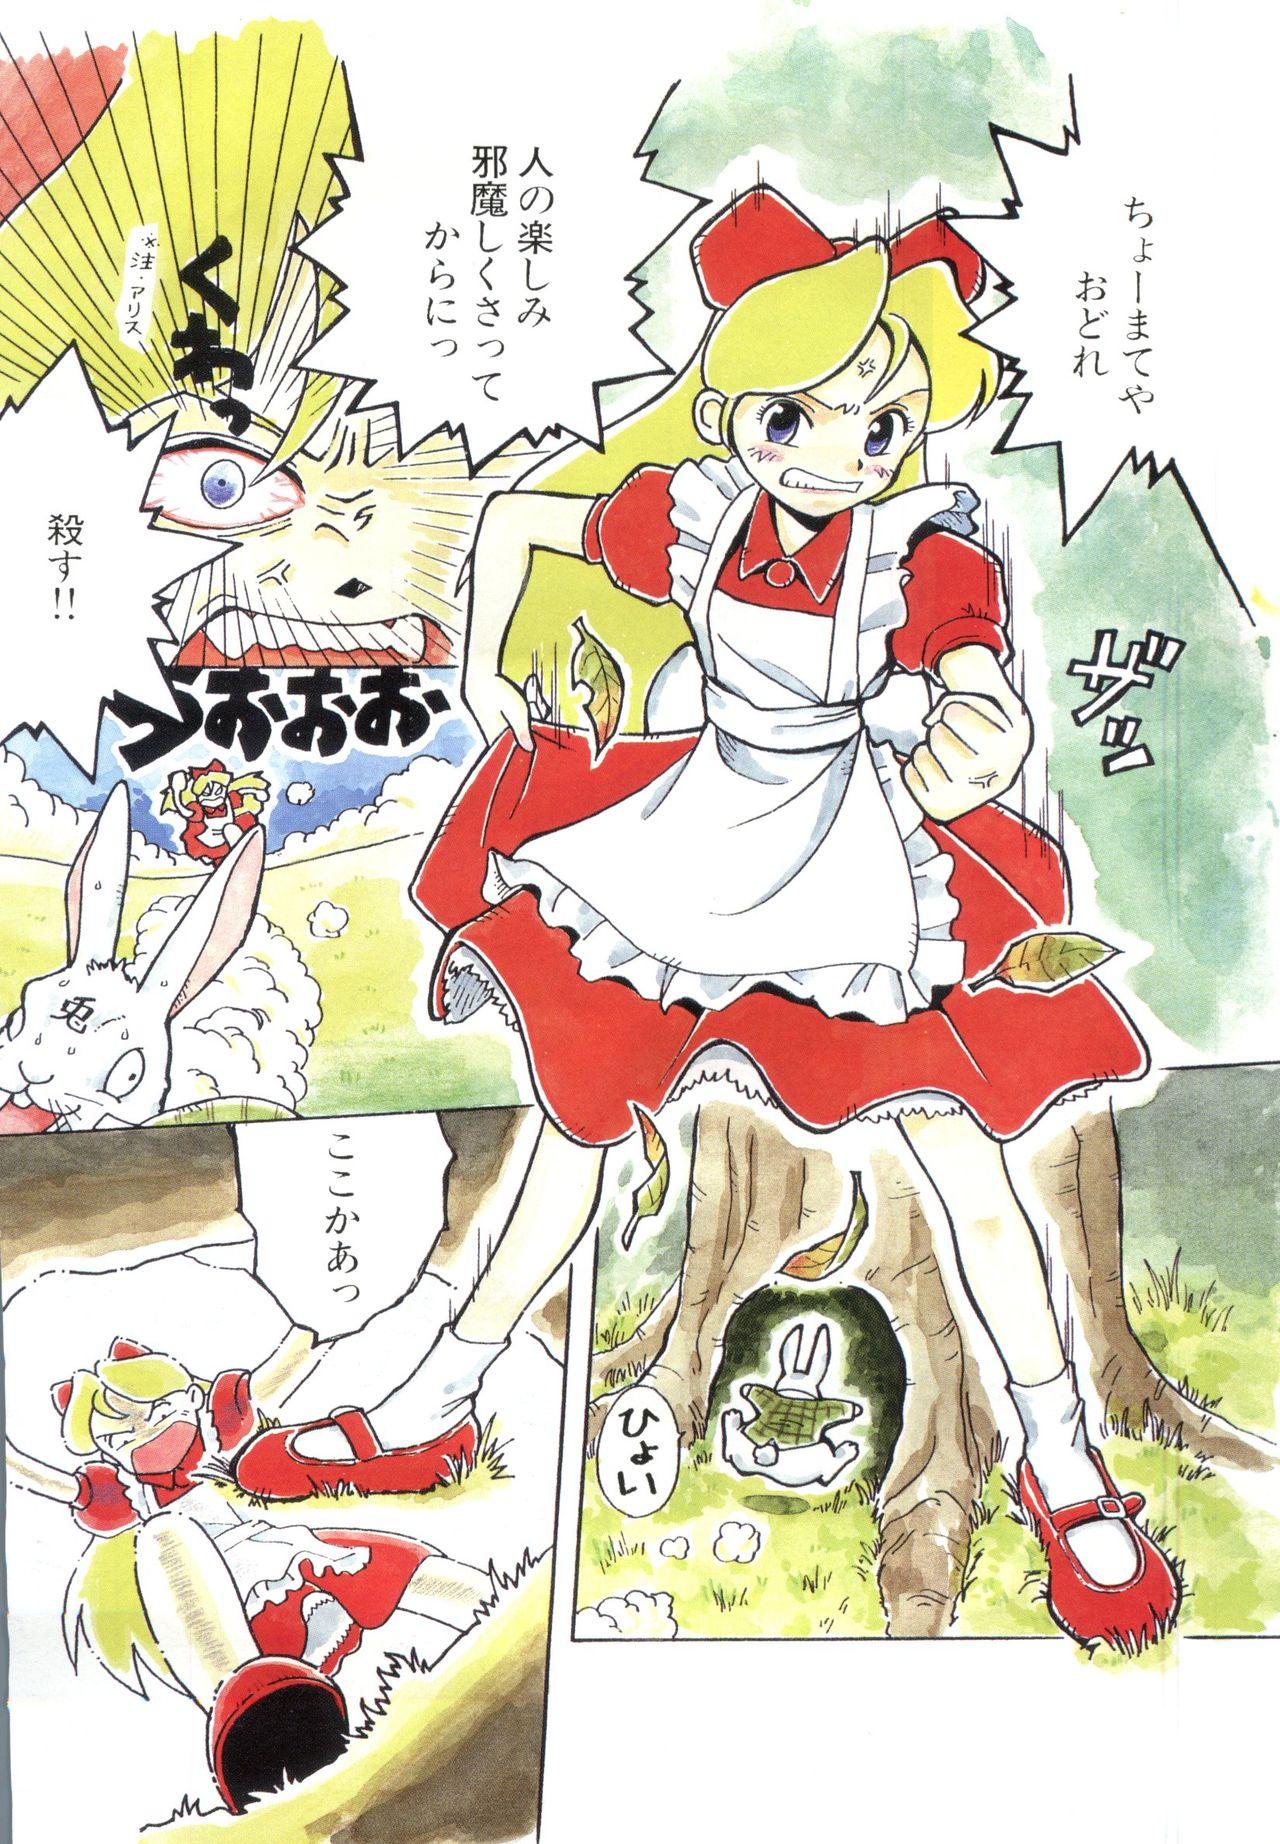 Foot Fetish Pai;kuu 1997 December - Sakura taisen Alice in wonderland Anne of green gables Analfucking - Page 6